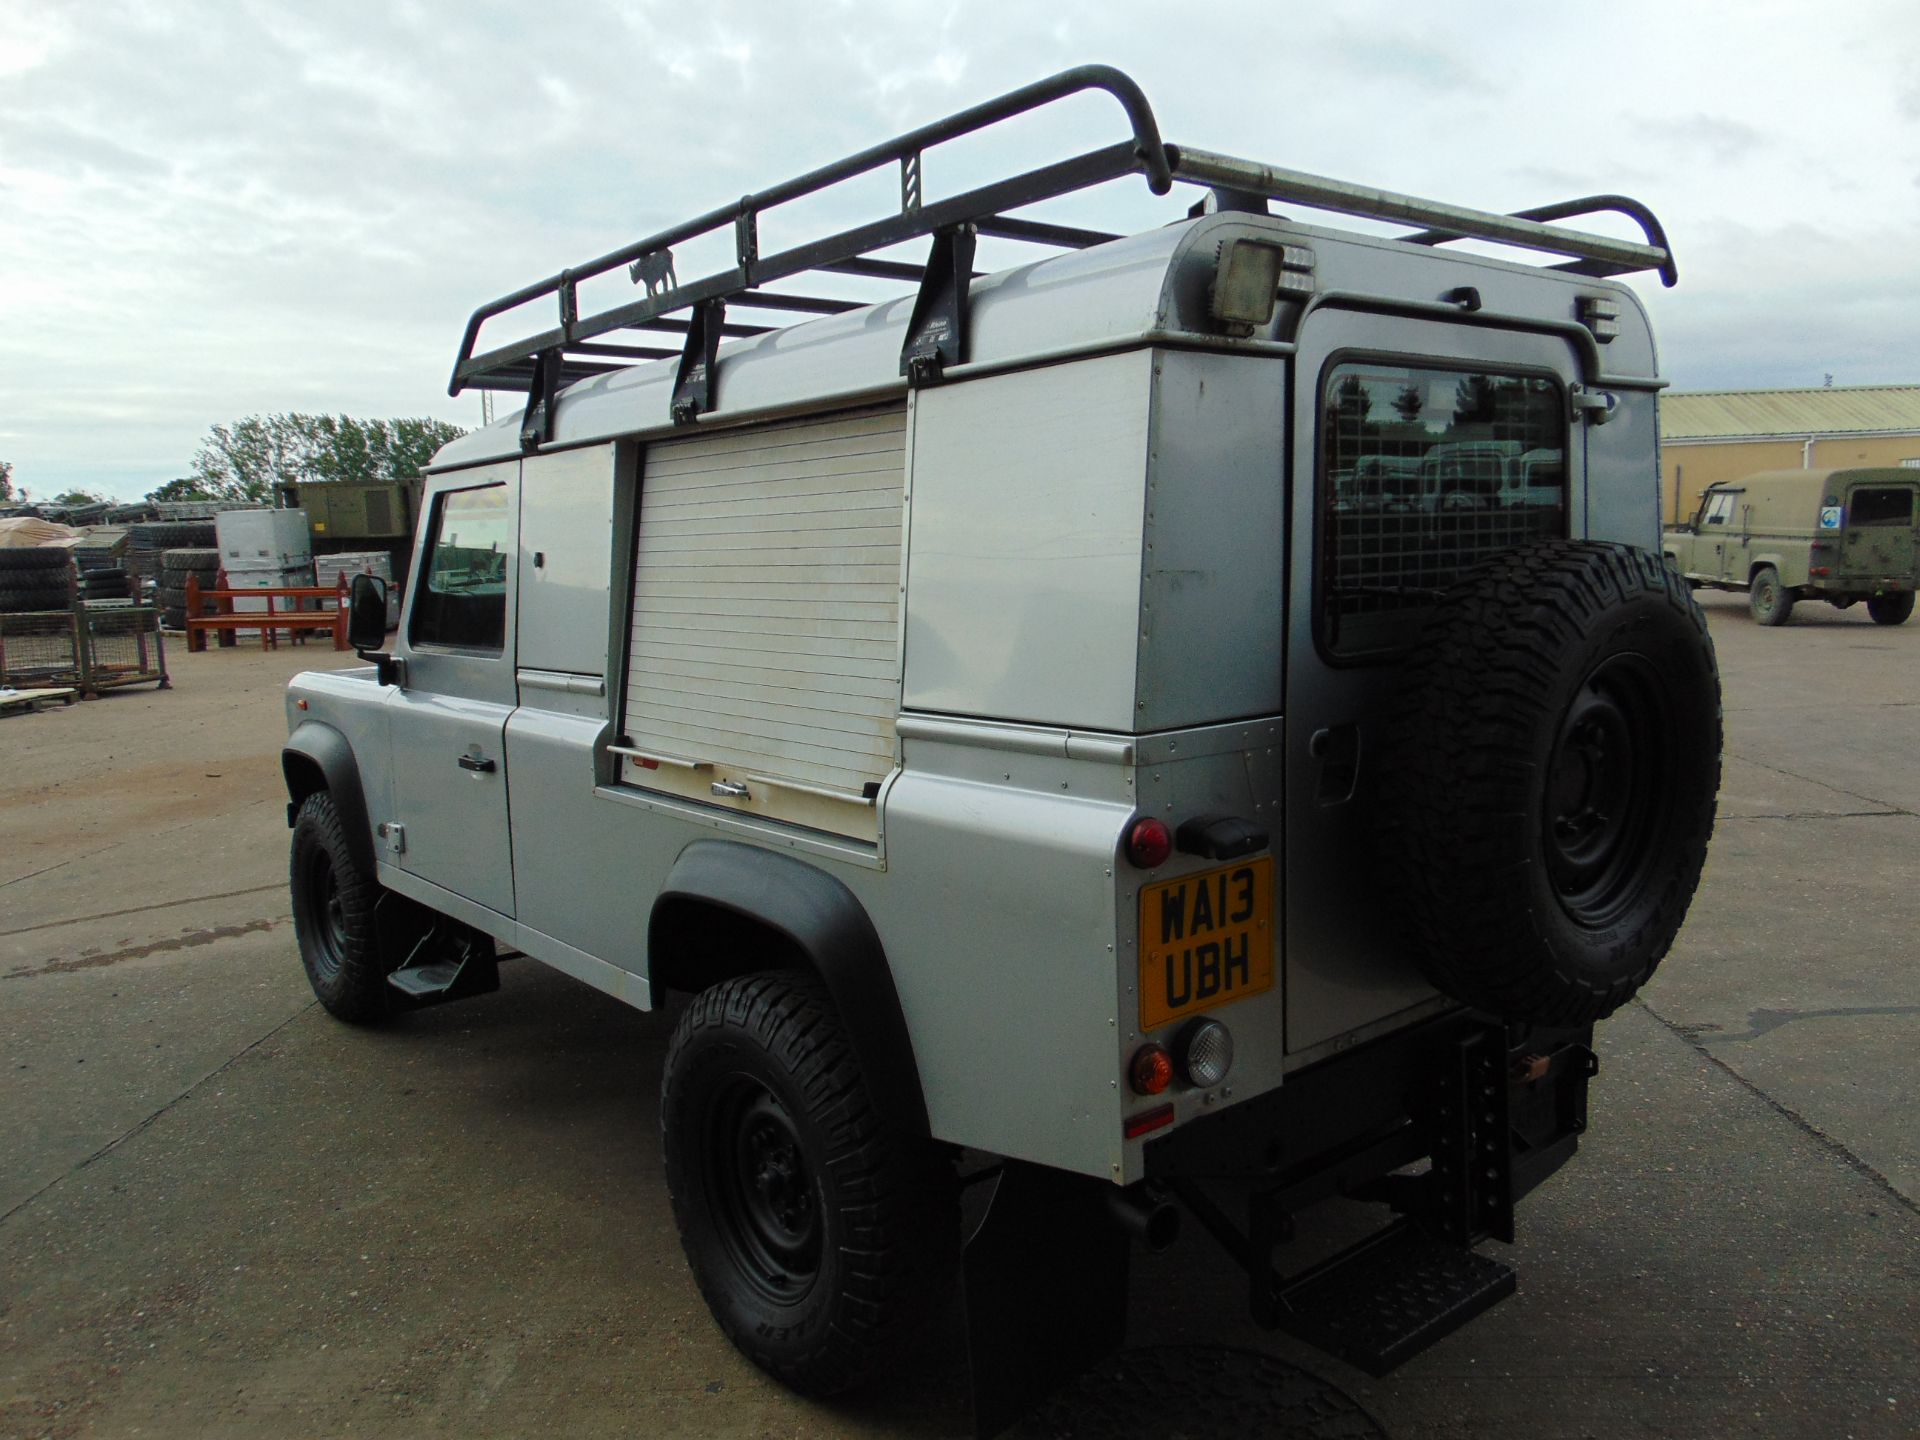 1 Owner 2013 Land Rover Defender 110 Puma hardtop 4x4 Utility vehicle (mobile workshop) - Image 8 of 32